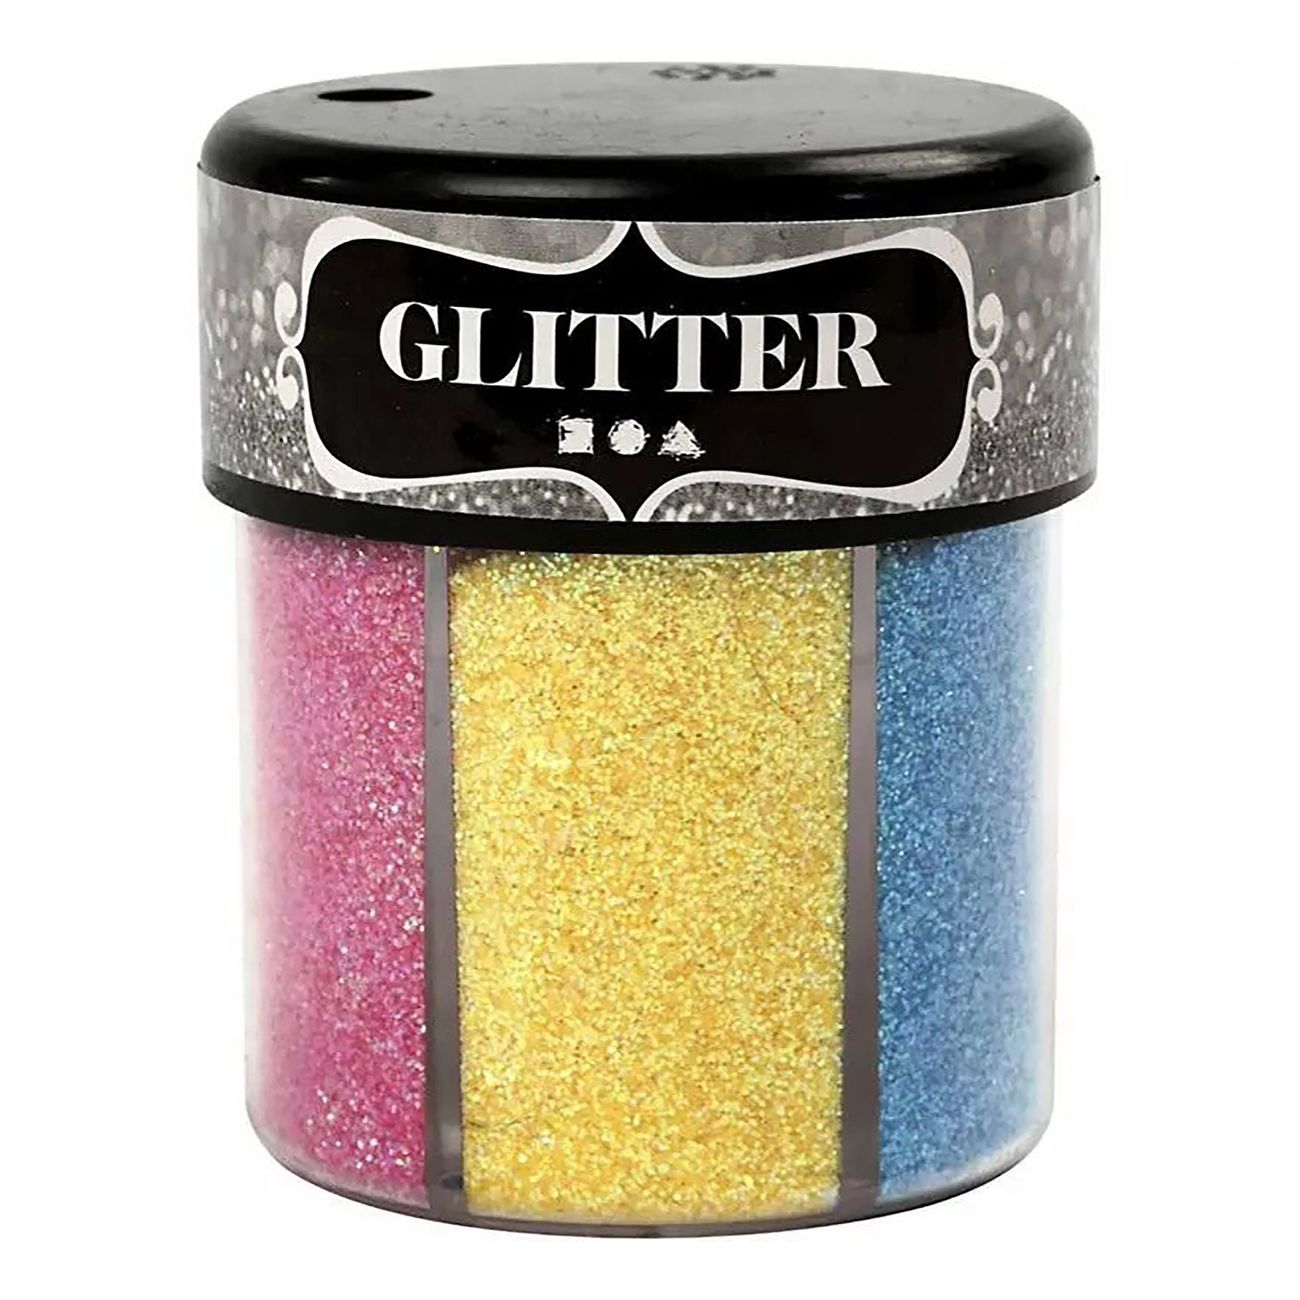 glitter-pa-burk-90999-4